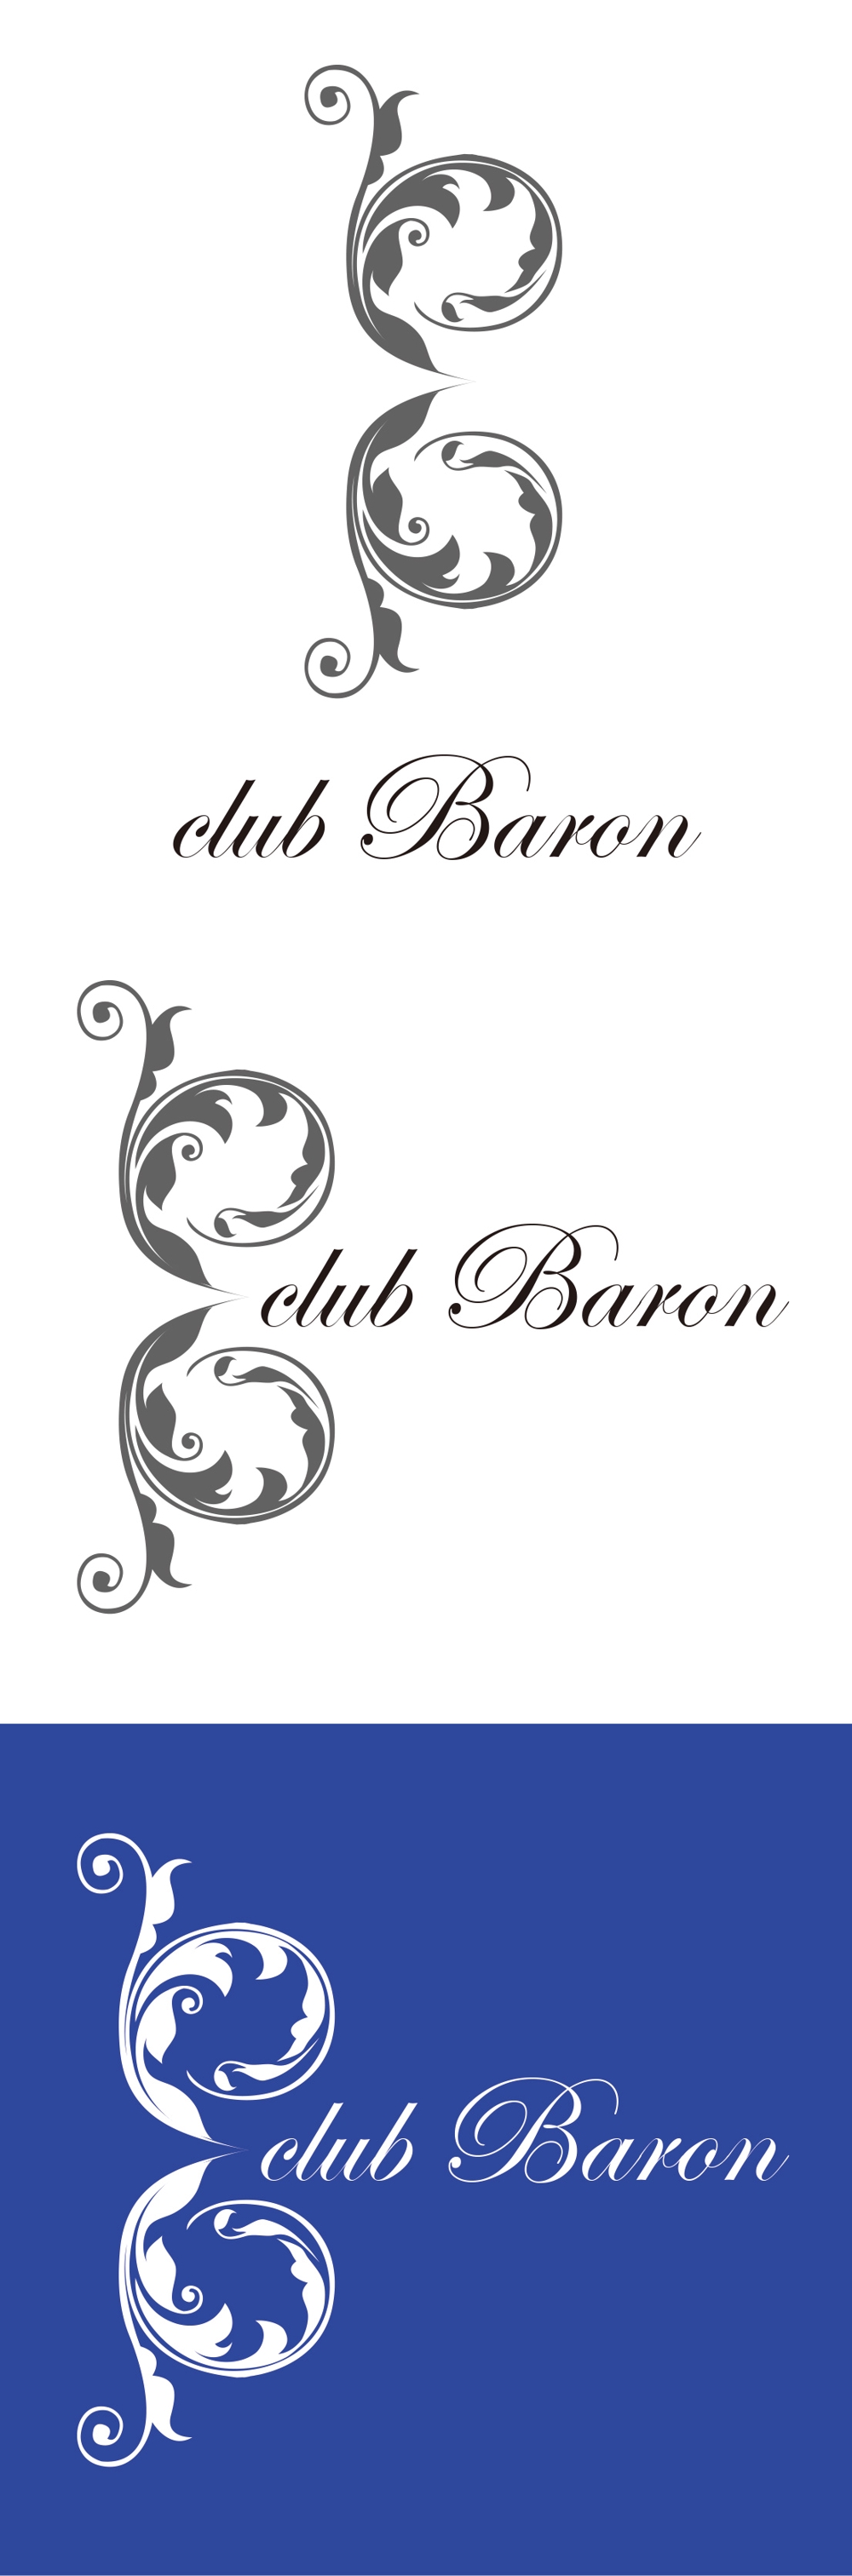 新規オープンのキャバ クラ club Baronのロゴ